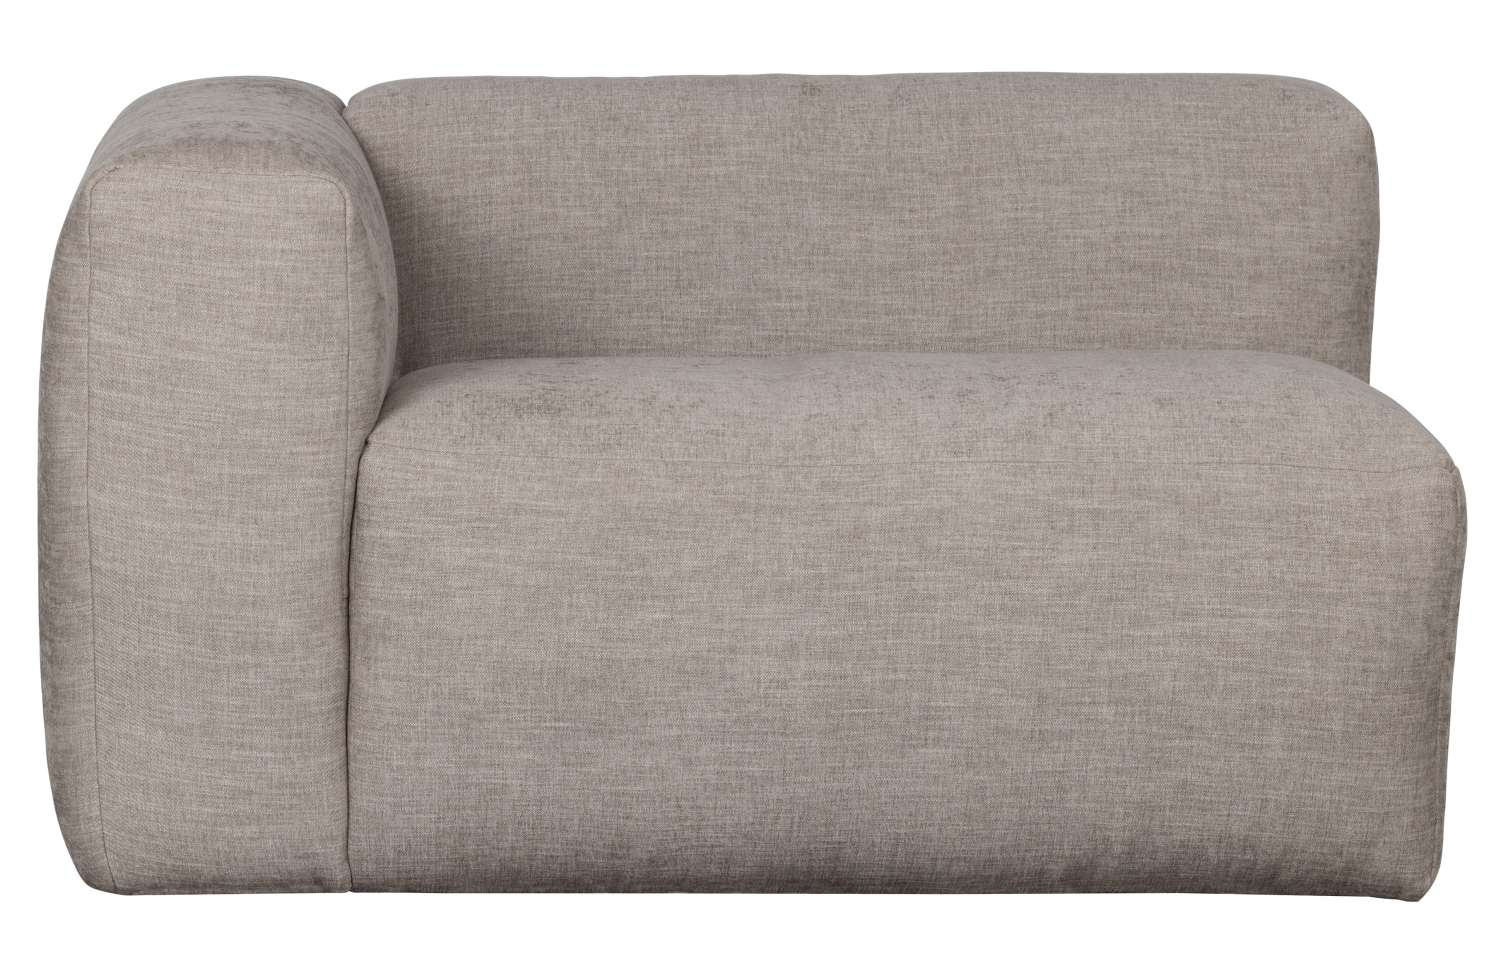 Das Modulsofa Yent als Eck-Element überzeugt mit seinem modernen Design. Gefertigt wurde es aus Webstoff, welcher einen hellgrauen Farbton besitzt. Das Sofa ist in der Ausführung Links. Die Sitzhöhe des Sofas beträgt 47 cm.